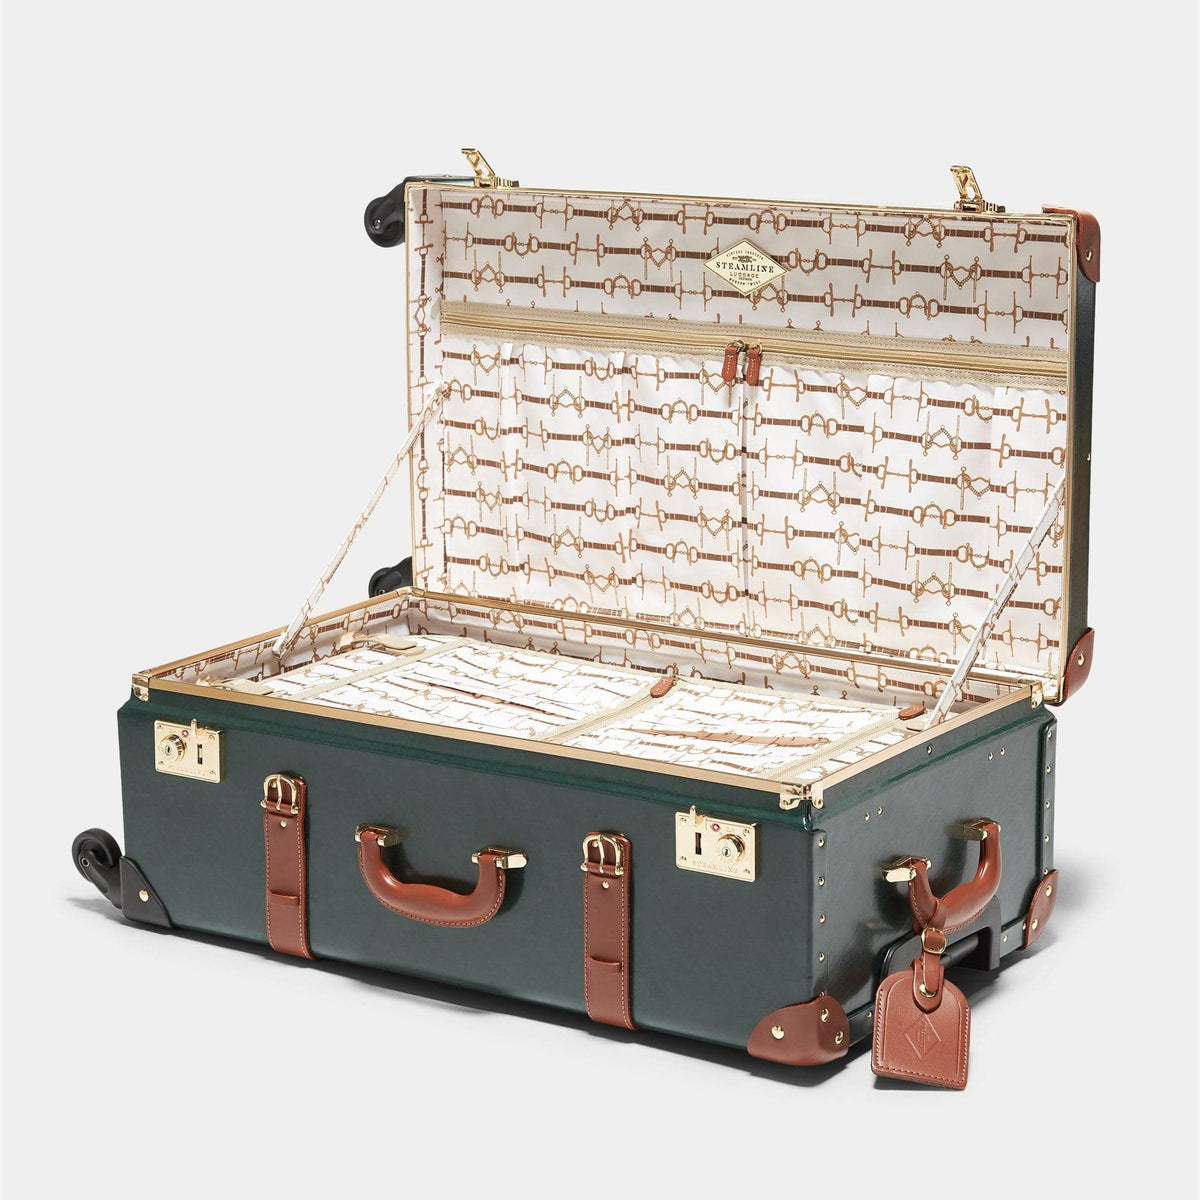 The Diplomat - Hunter Green Check In Spinner Spinner Steamline Luggage 